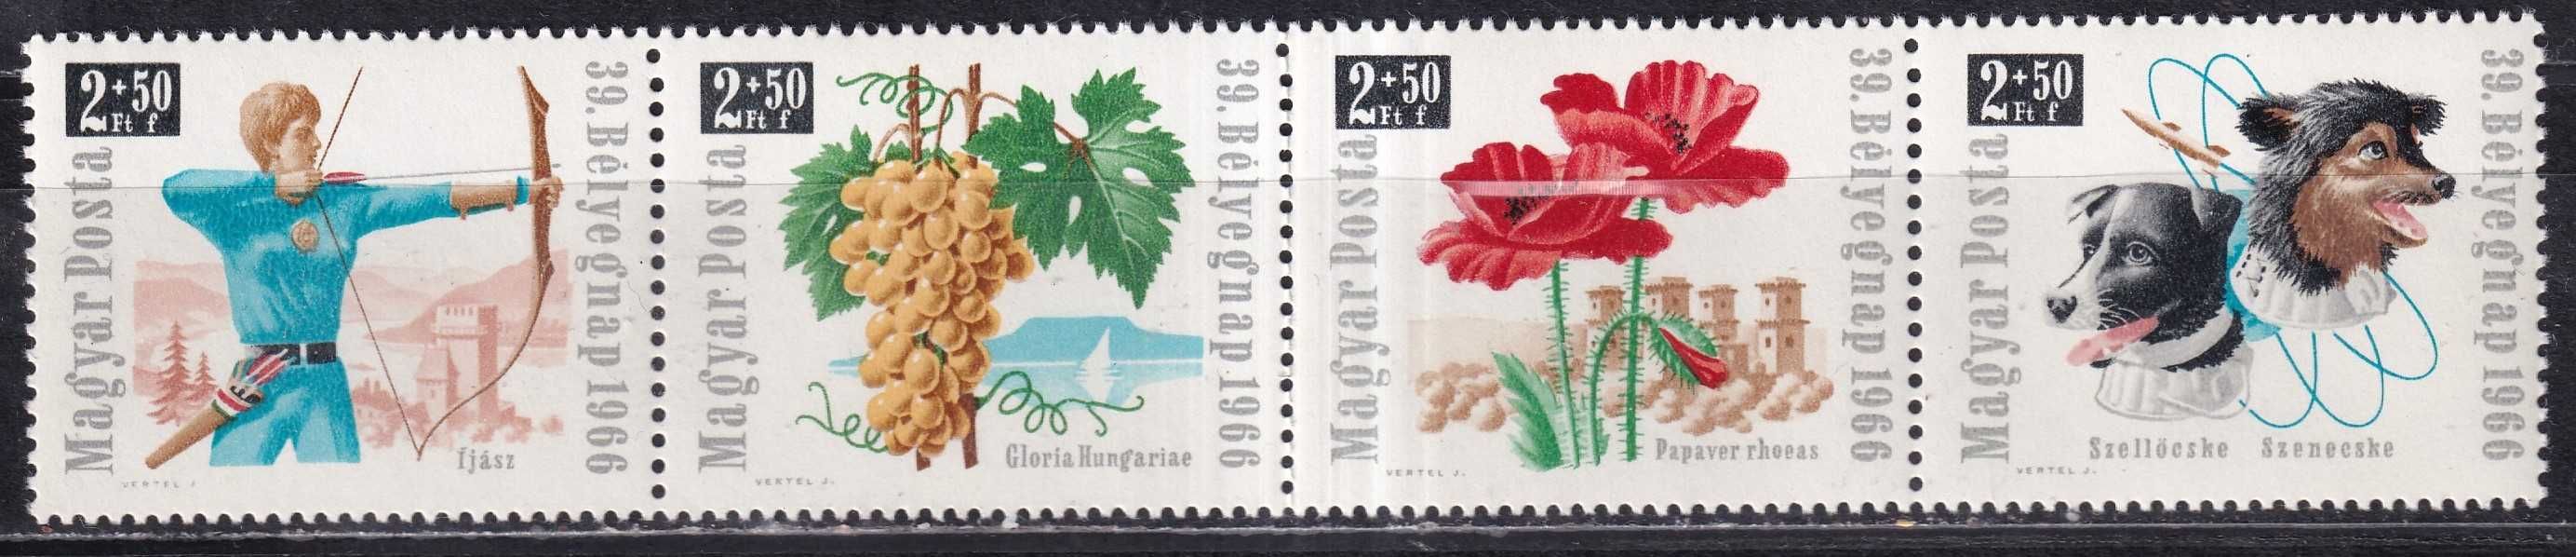 znaczki pocztowe - Węgry 1966 cena 3,90 zł kat.5€ (2)